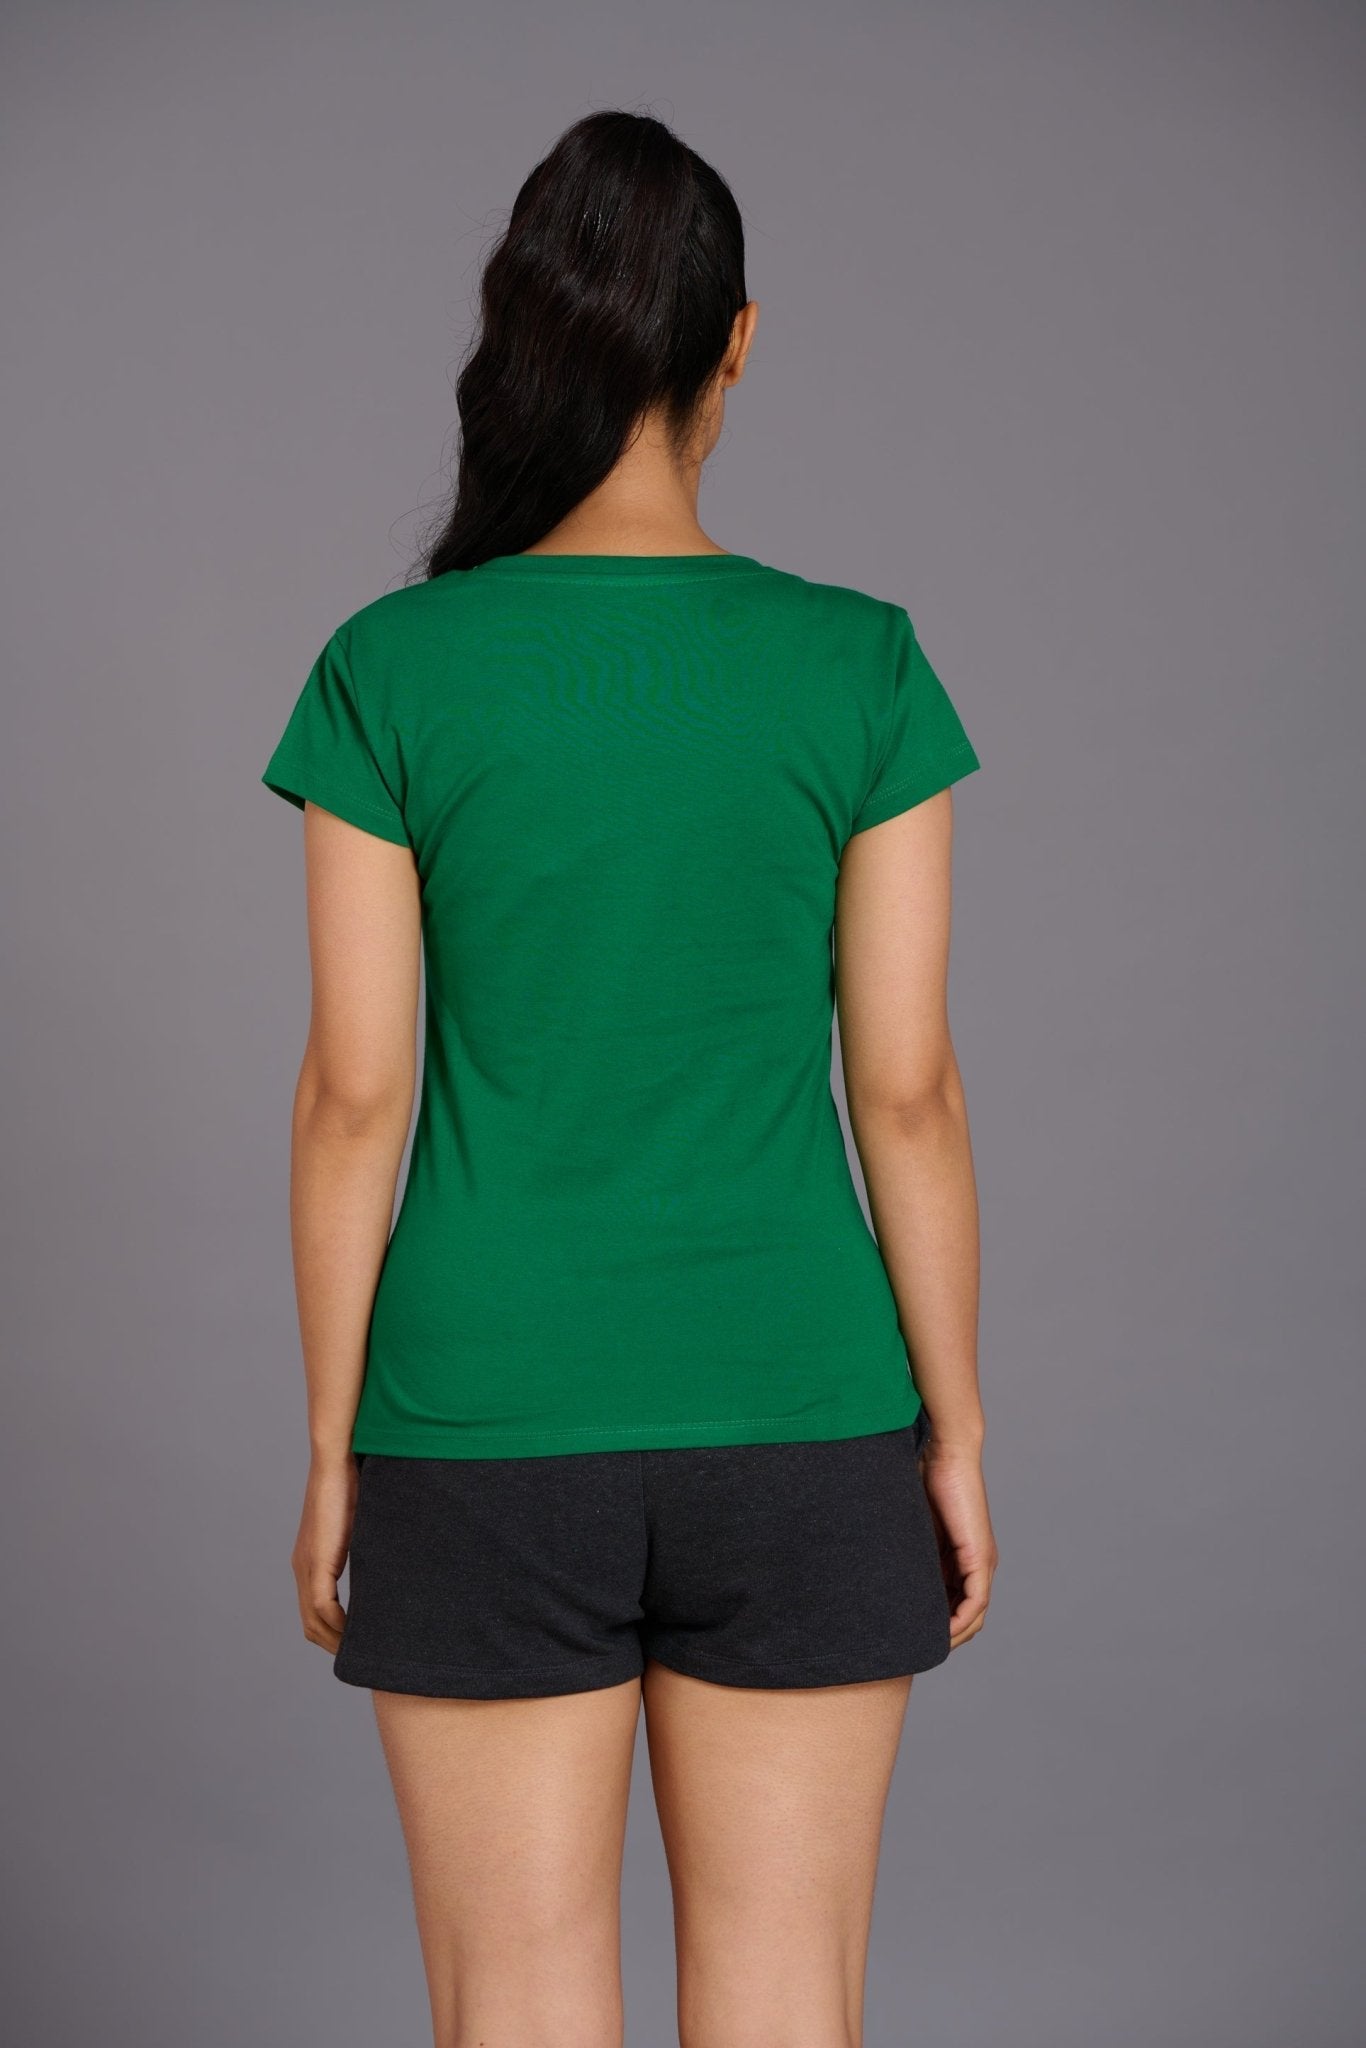 Satan in High Heels Green Melange Oversized T-Shirt for Women - Go Devil